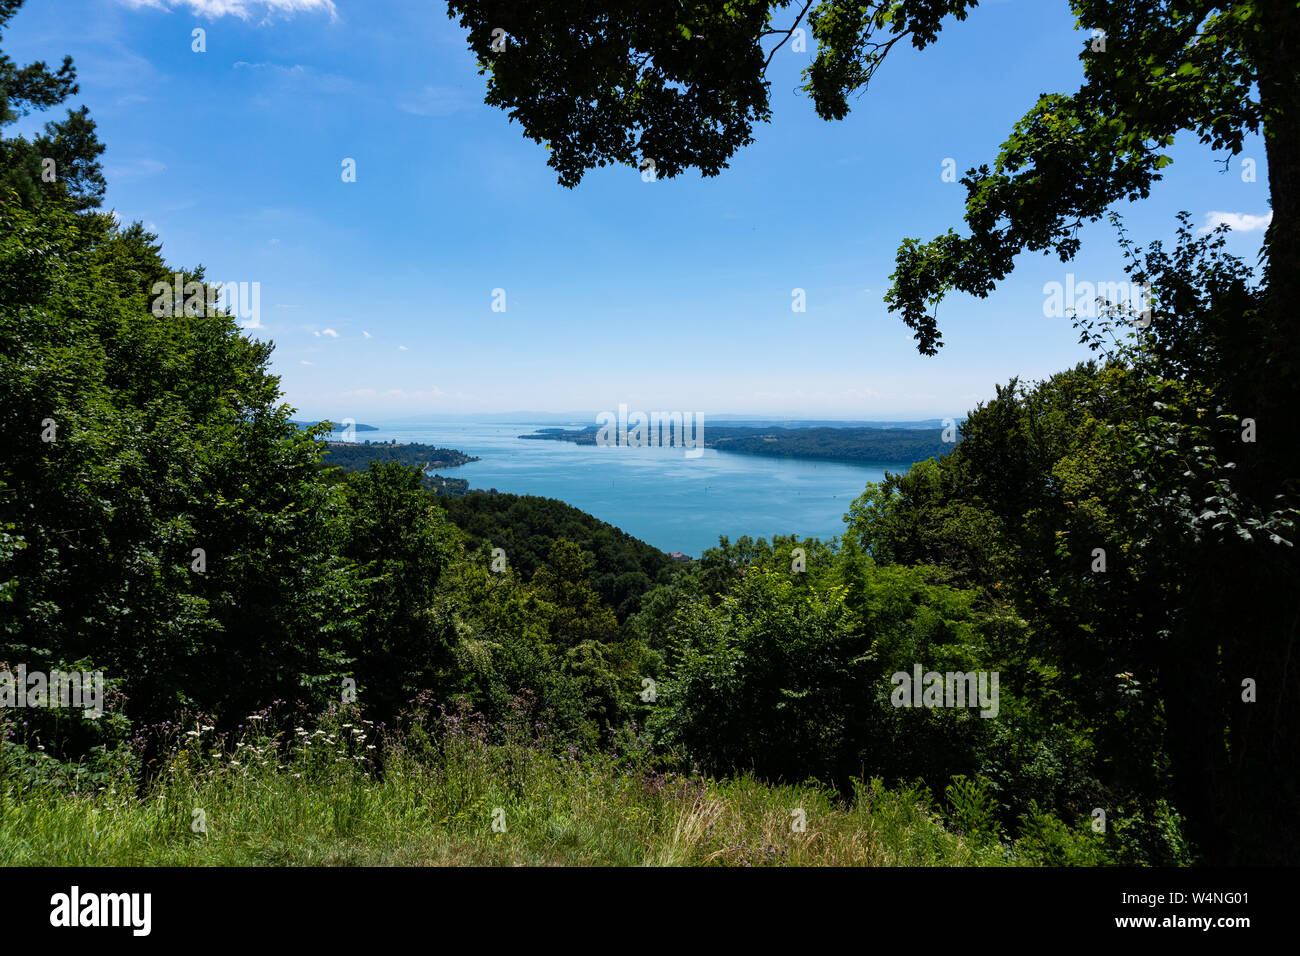 Las turquesas aguas del Lago Constanza, visto desde arriba, arbustos verdes y árboles enmarcar la imagen Foto de stock